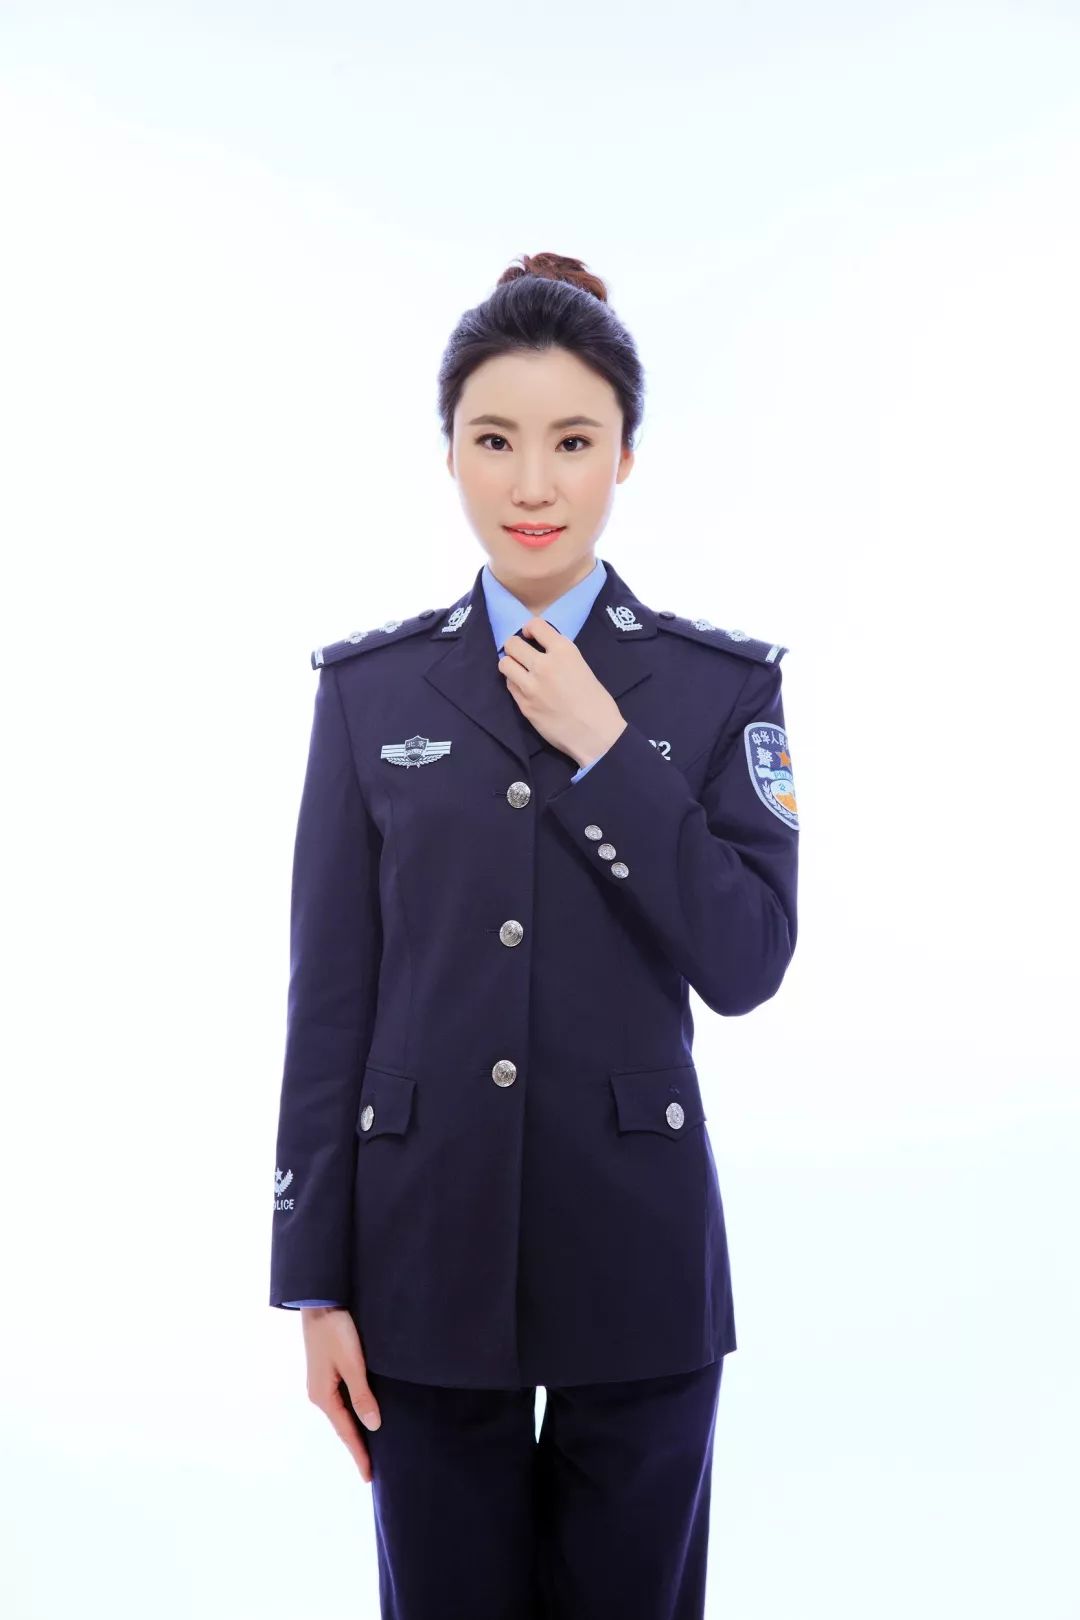 女警服 服装图片